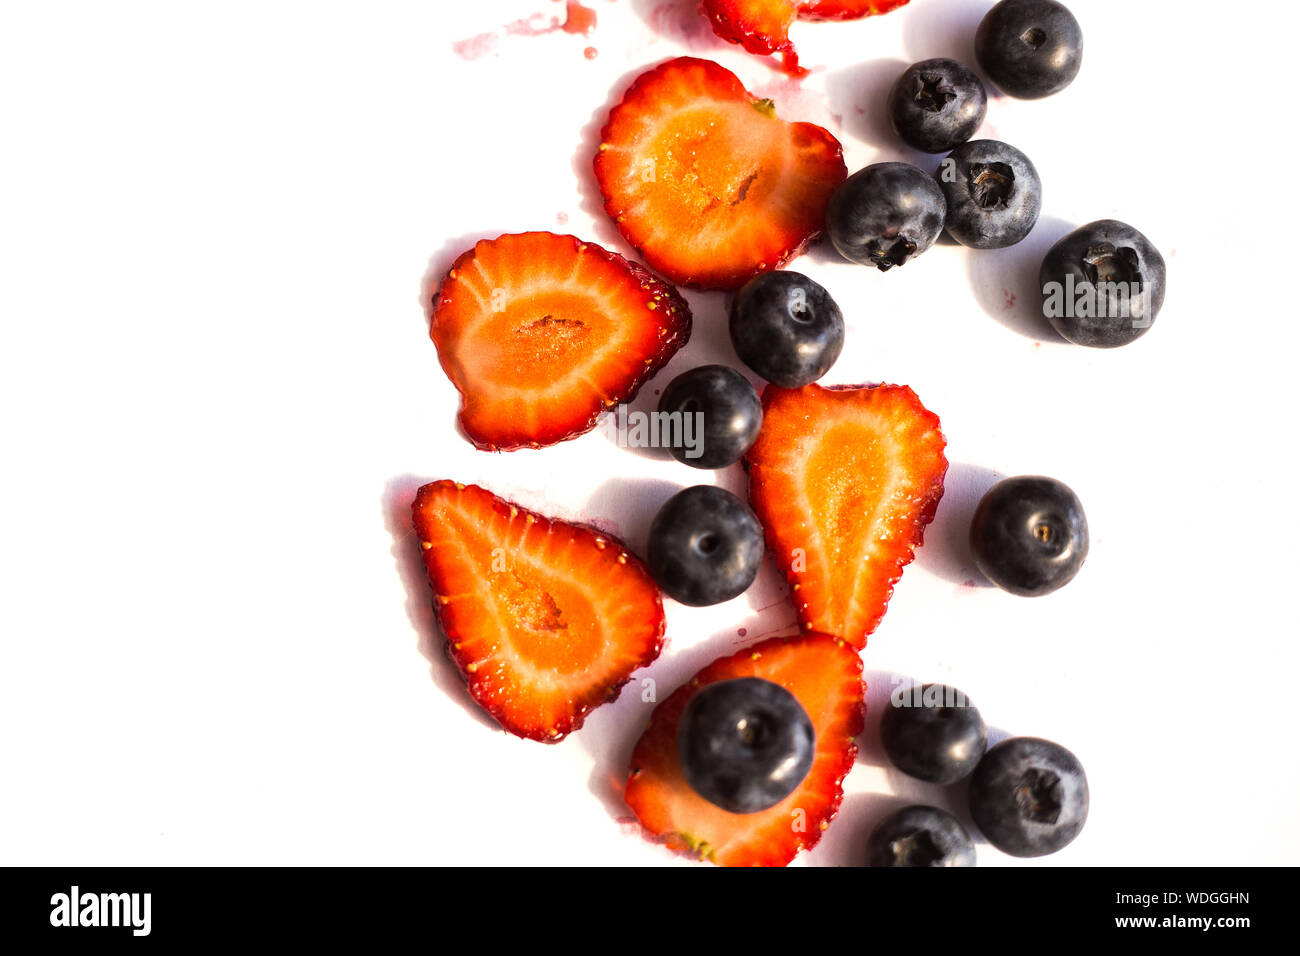 Blackberry und Erdbeere auf weißen Hintergrund. Nahaufnahme, Ansicht von oben, hohe Auflösung Produkt Stockfoto